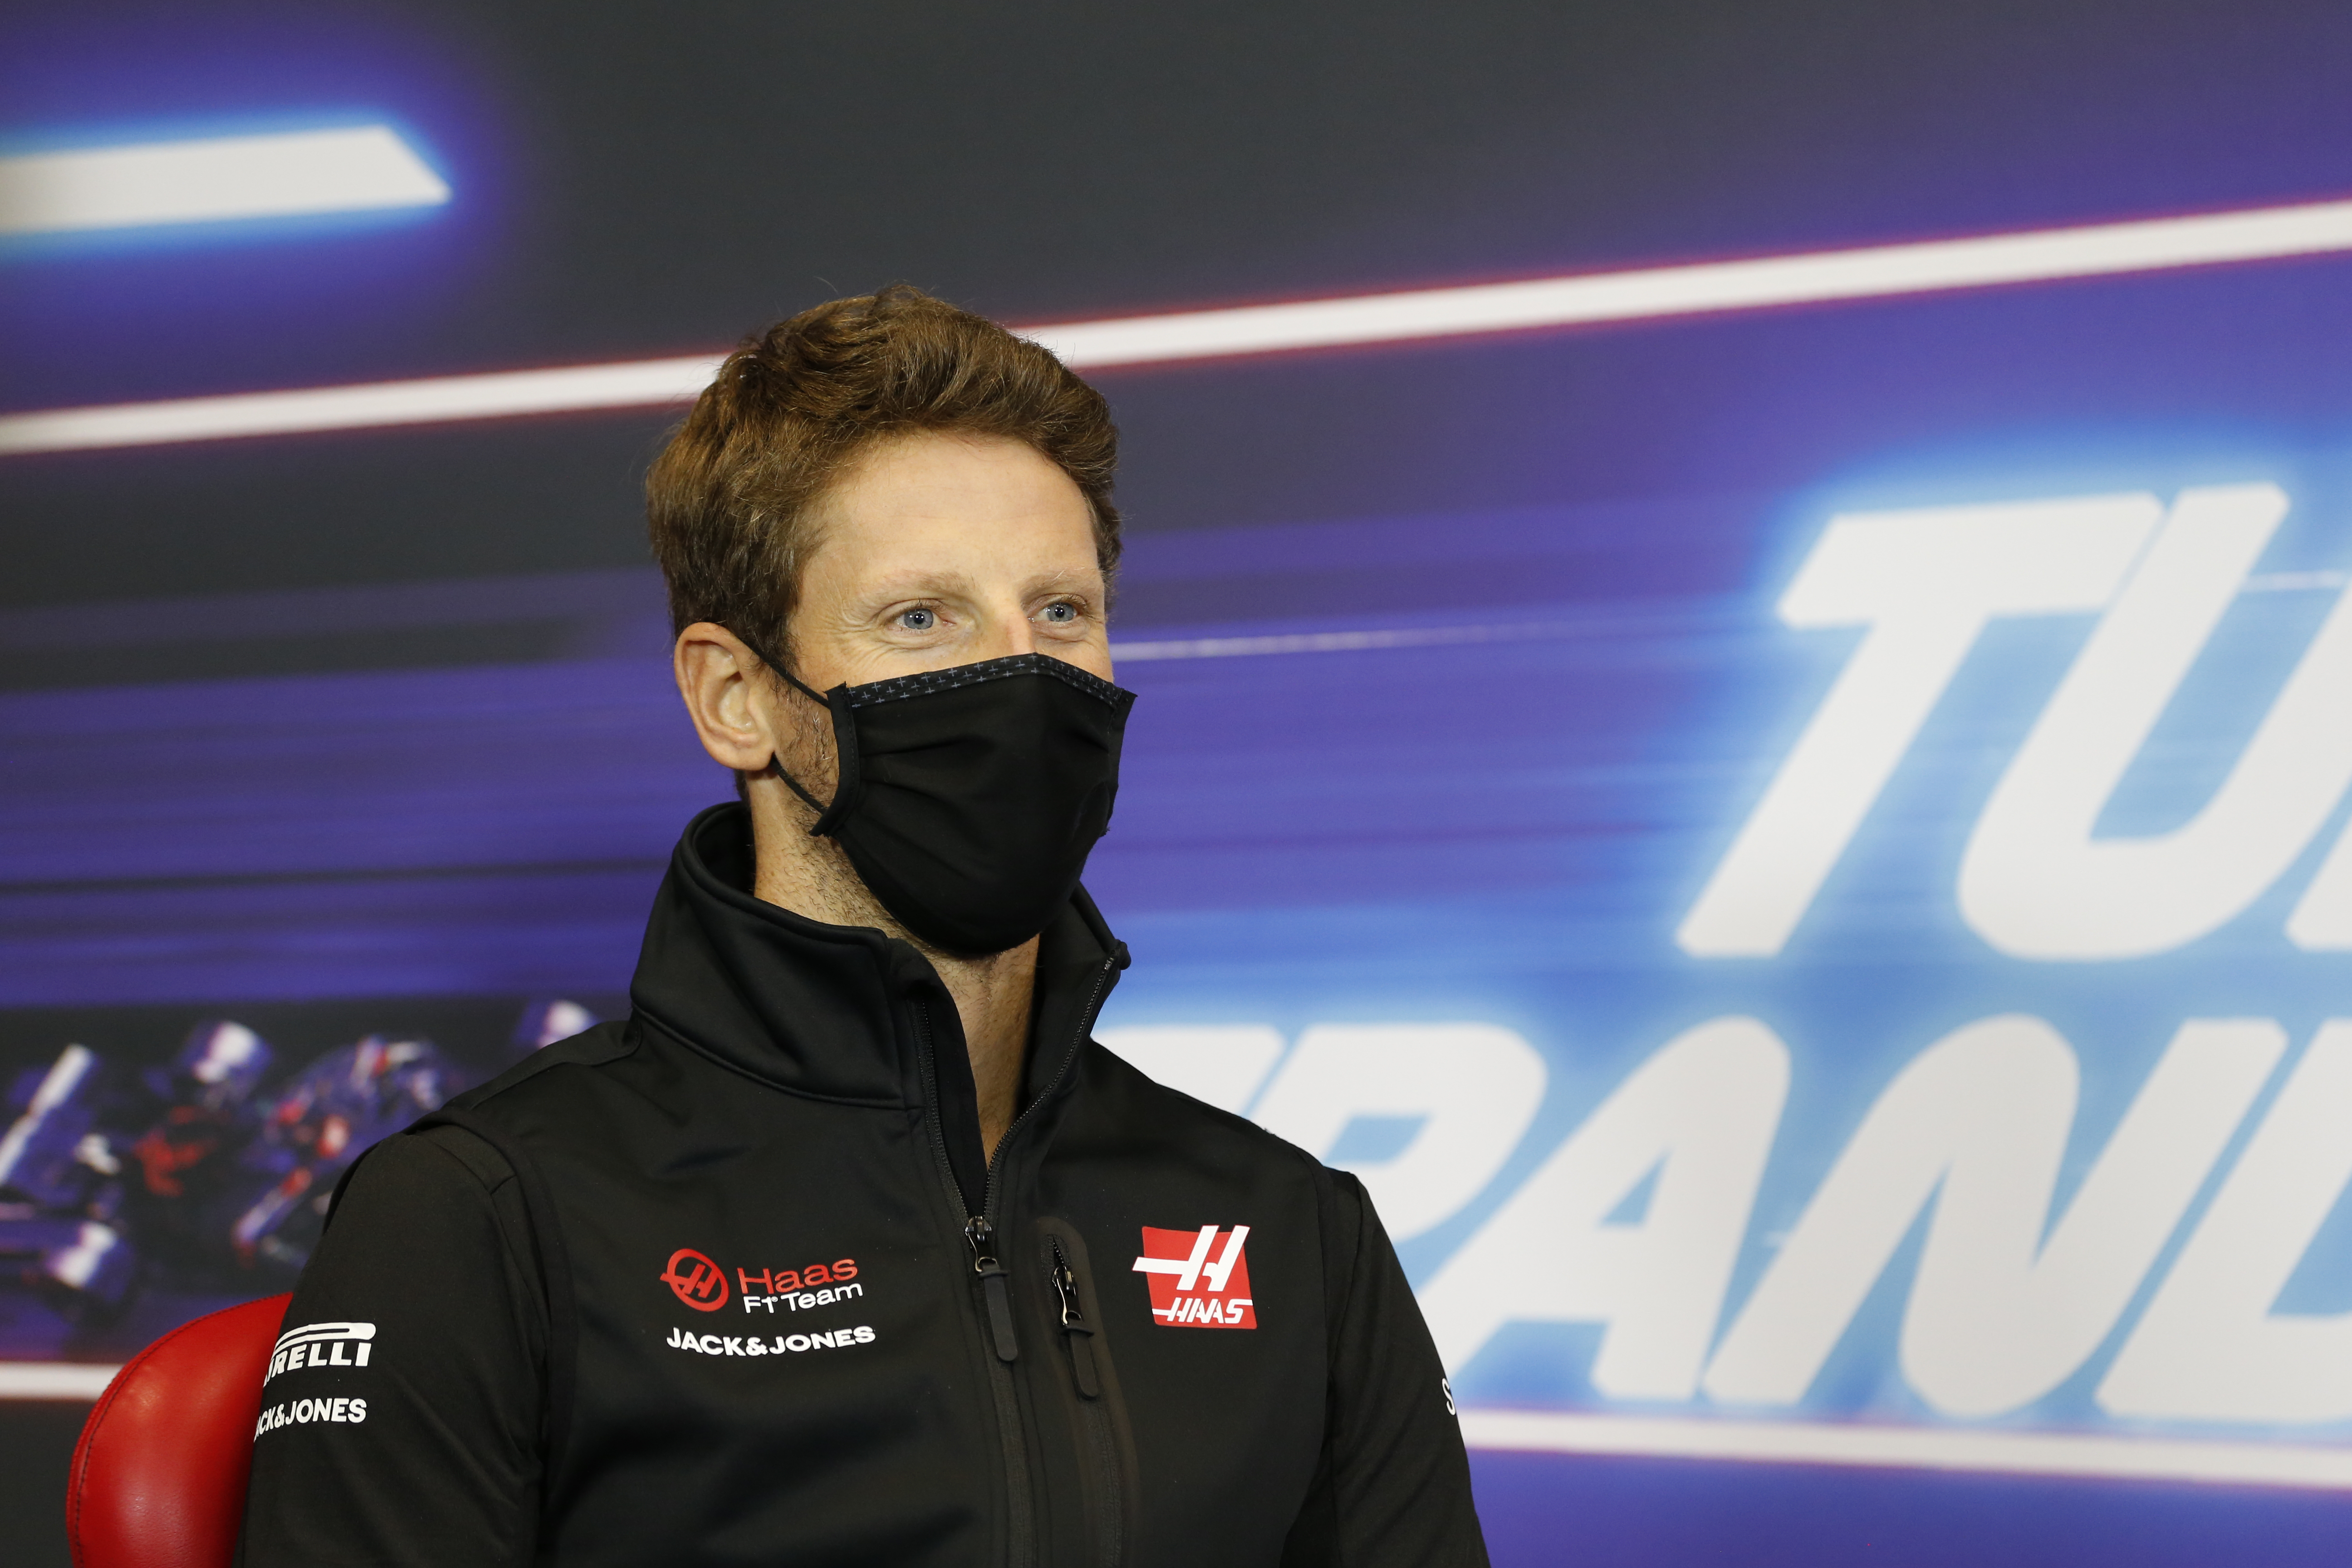 Úgy néz ki, Romain Grosjean tényleg egész jól megúszta